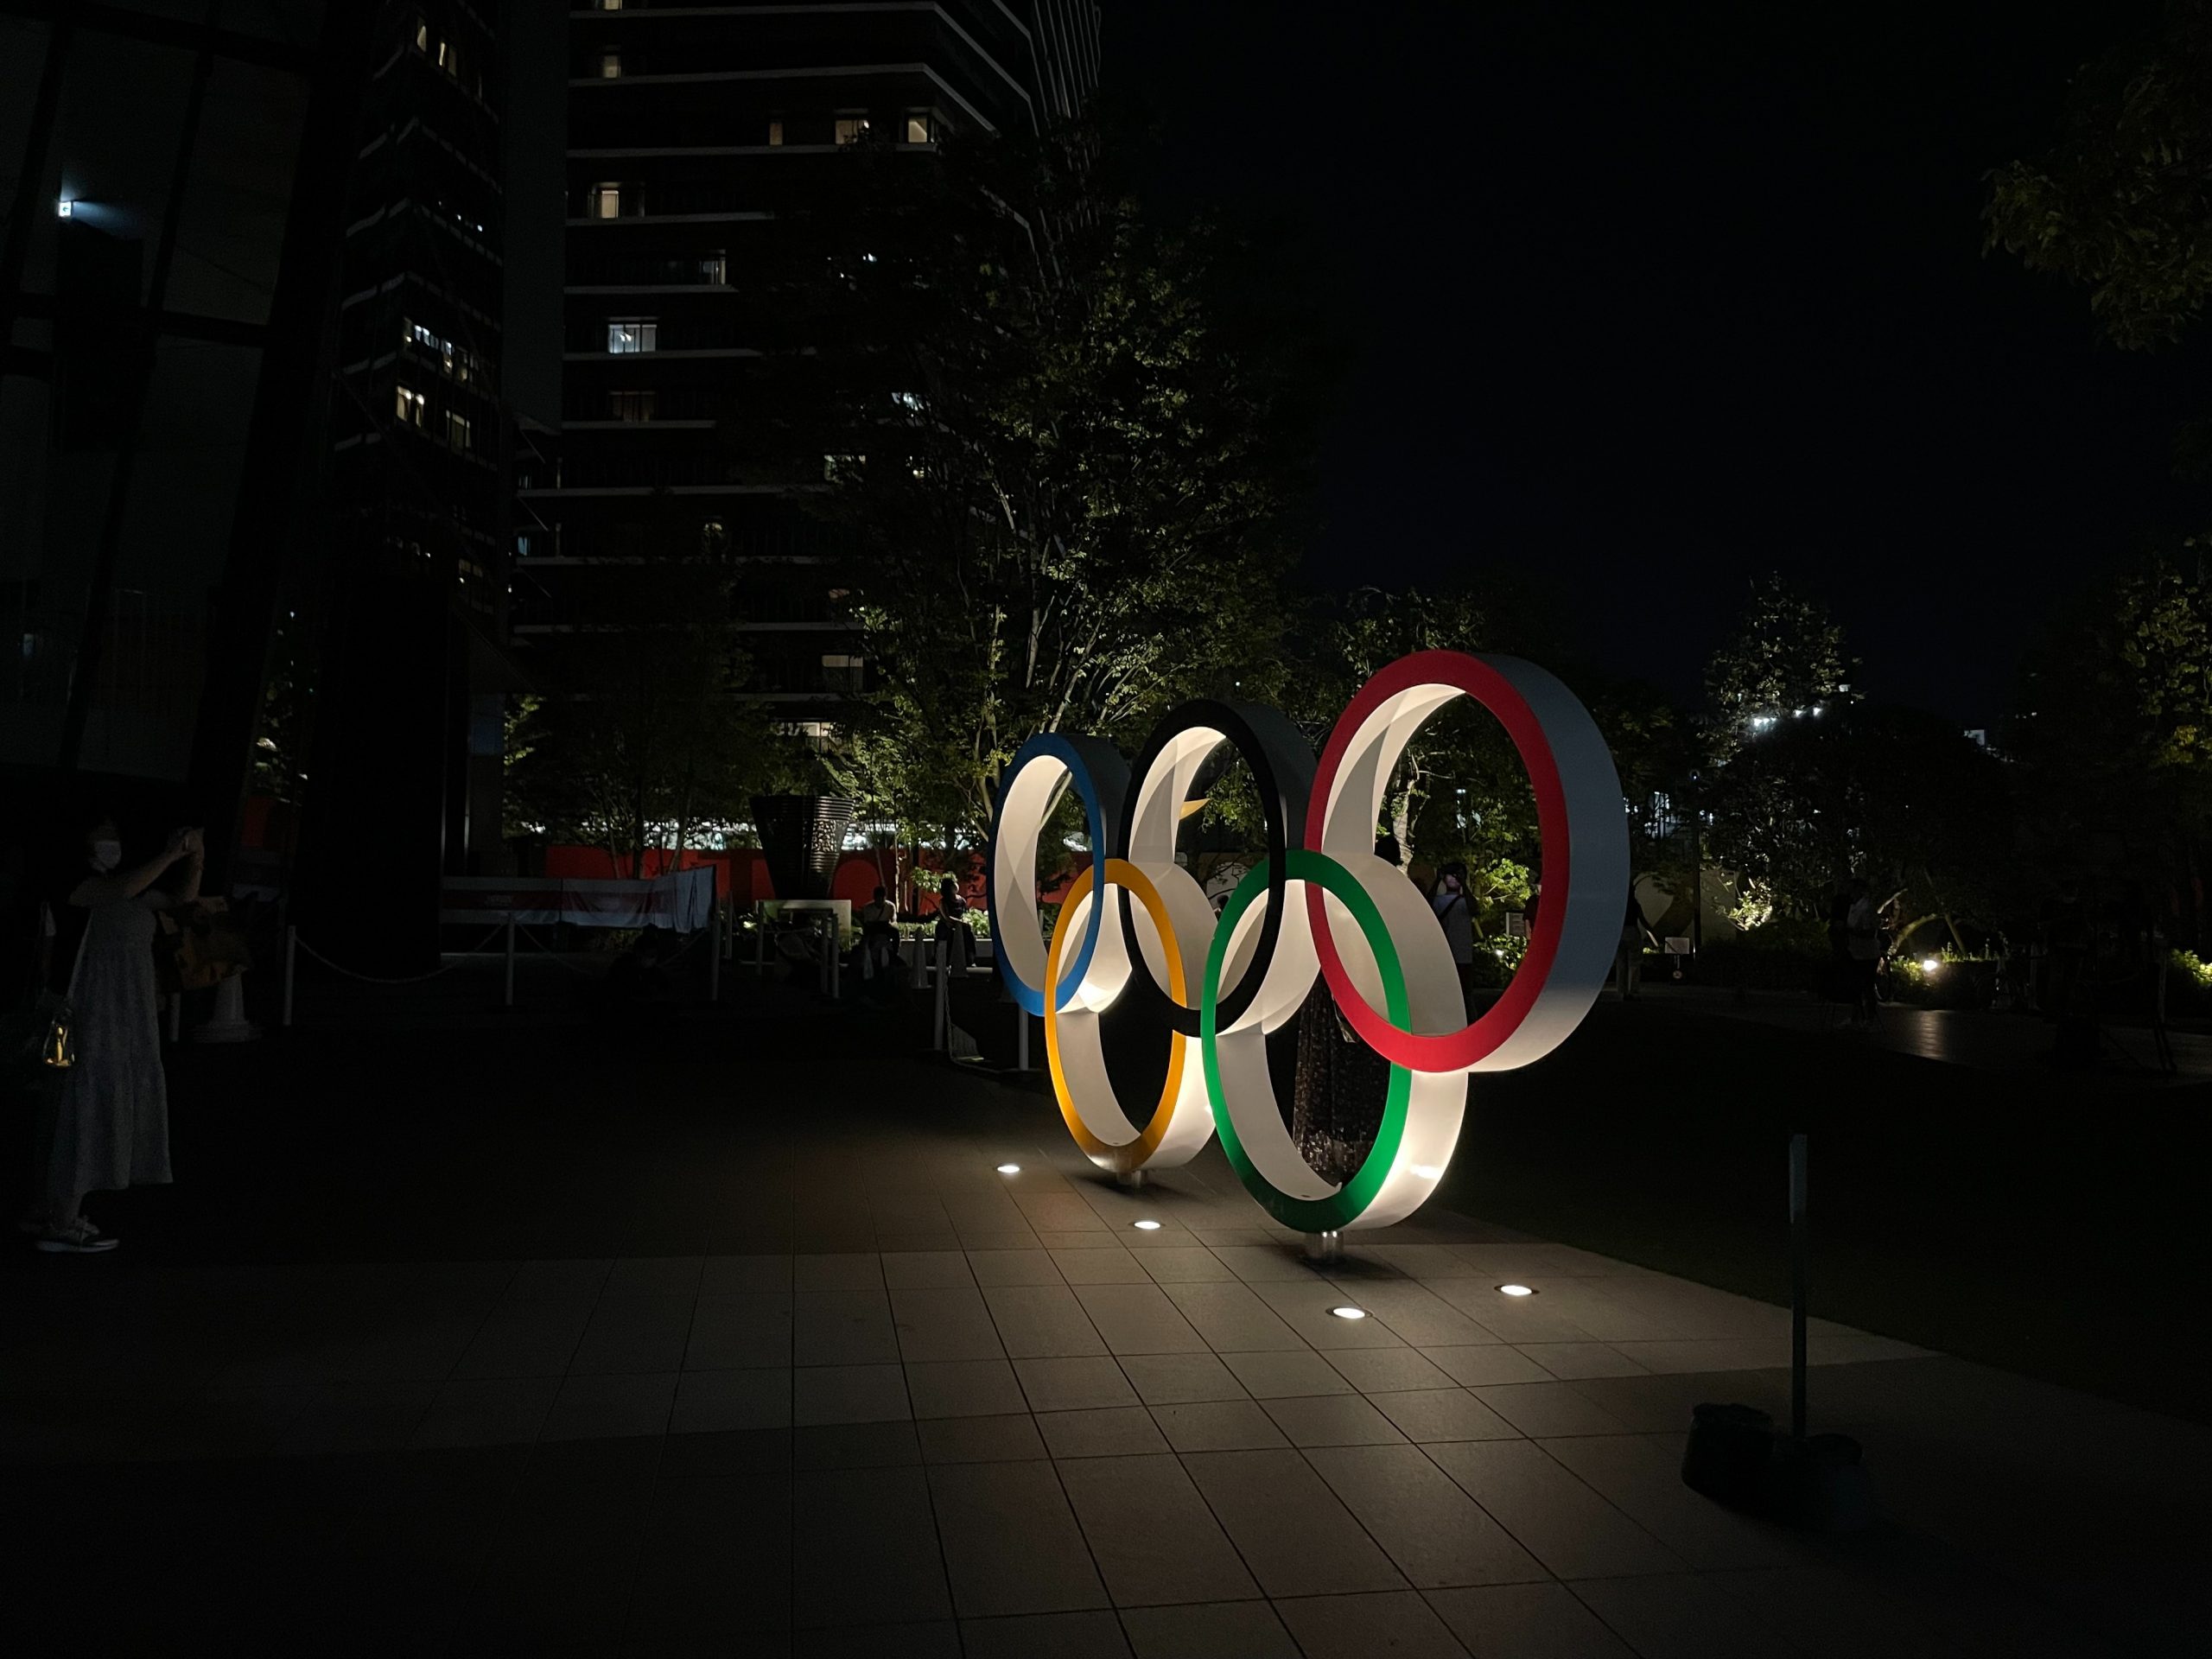 COI anuncia planos para criação de Jogos Olímpicos de Esports, esports